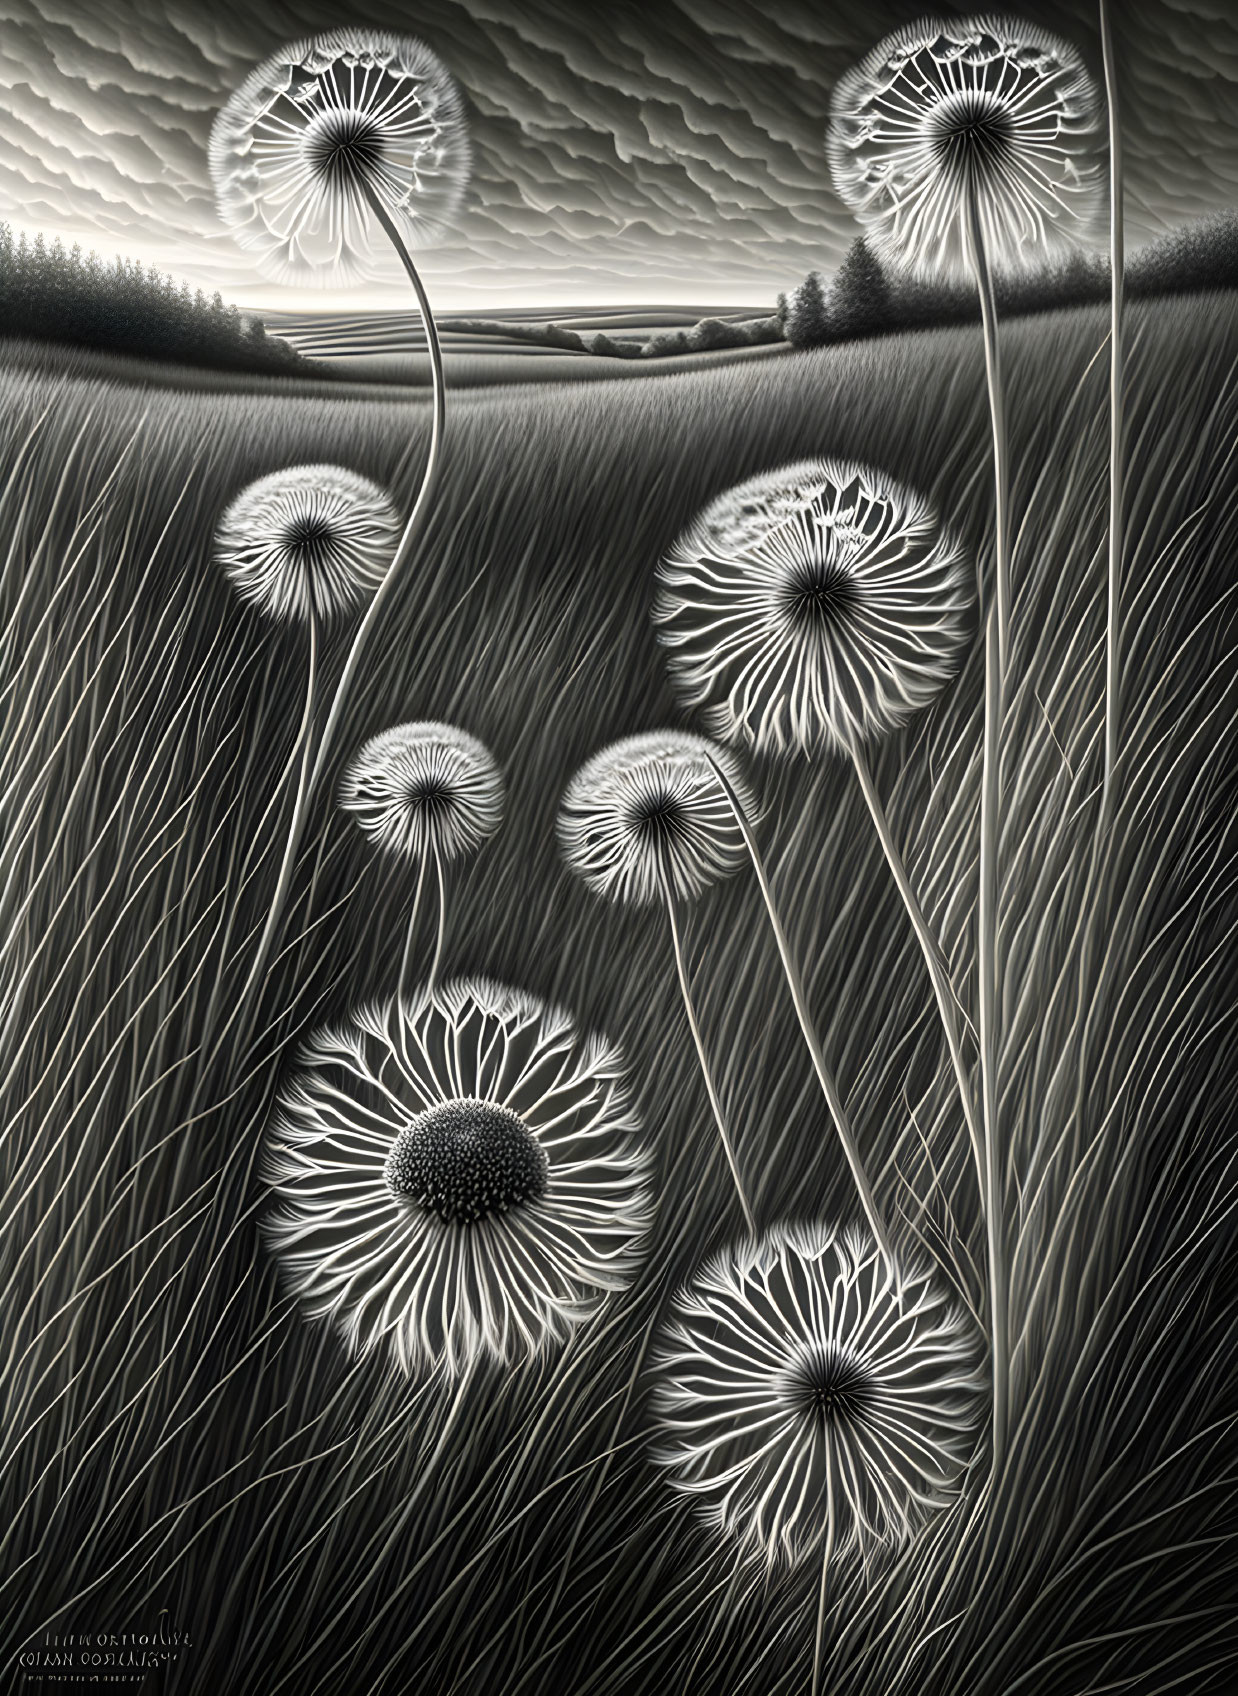 Monochromatic artwork of intricate dandelion-like plants in wavy fields.